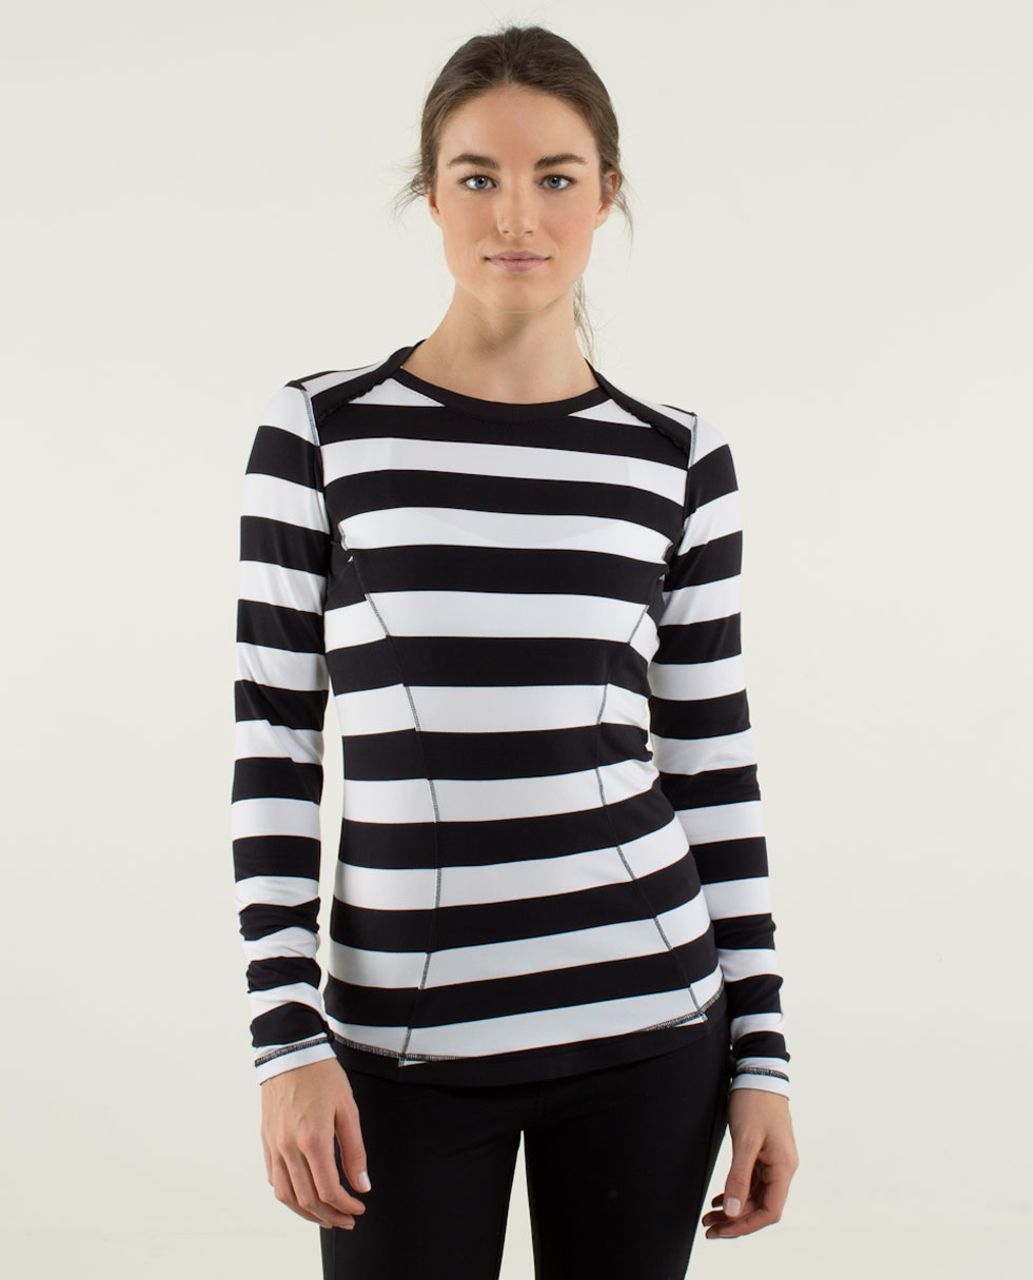 Lululemon Base Runner Long Sleeve - Straightup Stripe Black White / Black